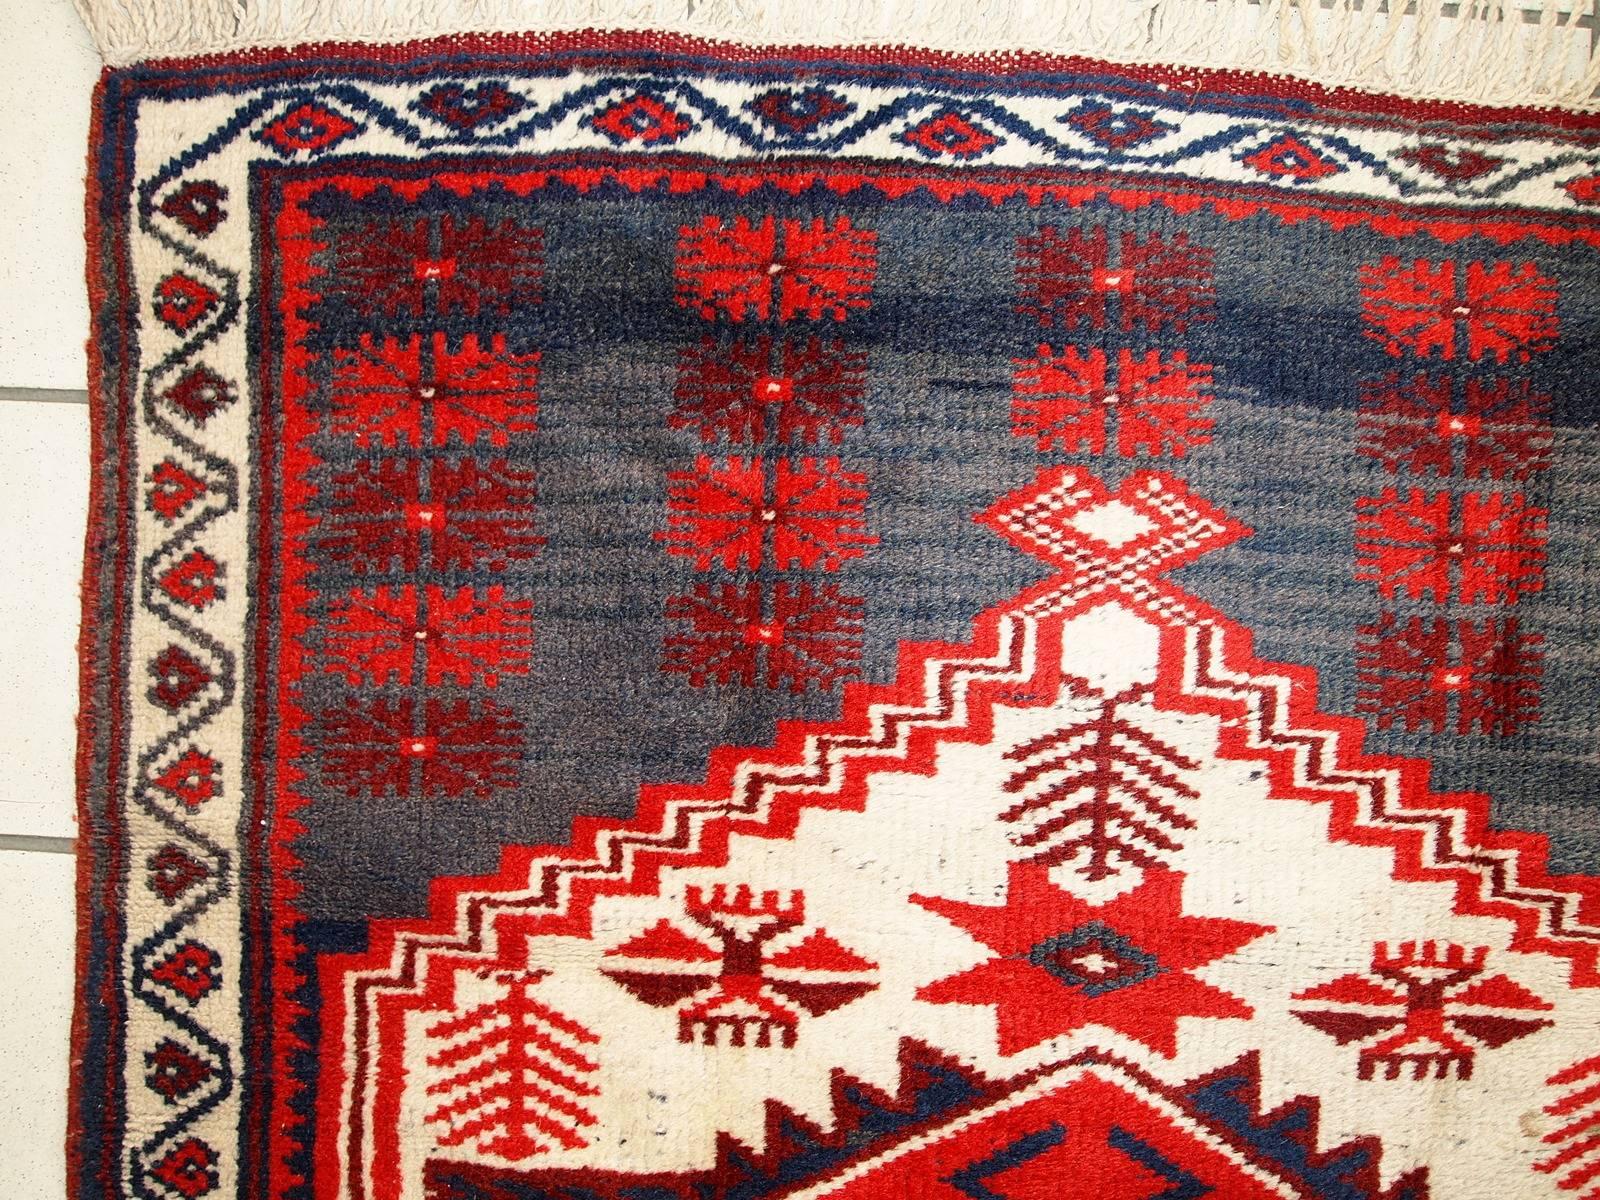 Antiker türkischer anatolischer Teppich im Originalzustand. Der Teppich hat ein traditionelles anatolisches Design mit einem großen rautenförmigen Medaillon in der Mitte in weißer Farbe. Hintergrundfarbe aufgeteilt in zwei (abrash) marineblaue und